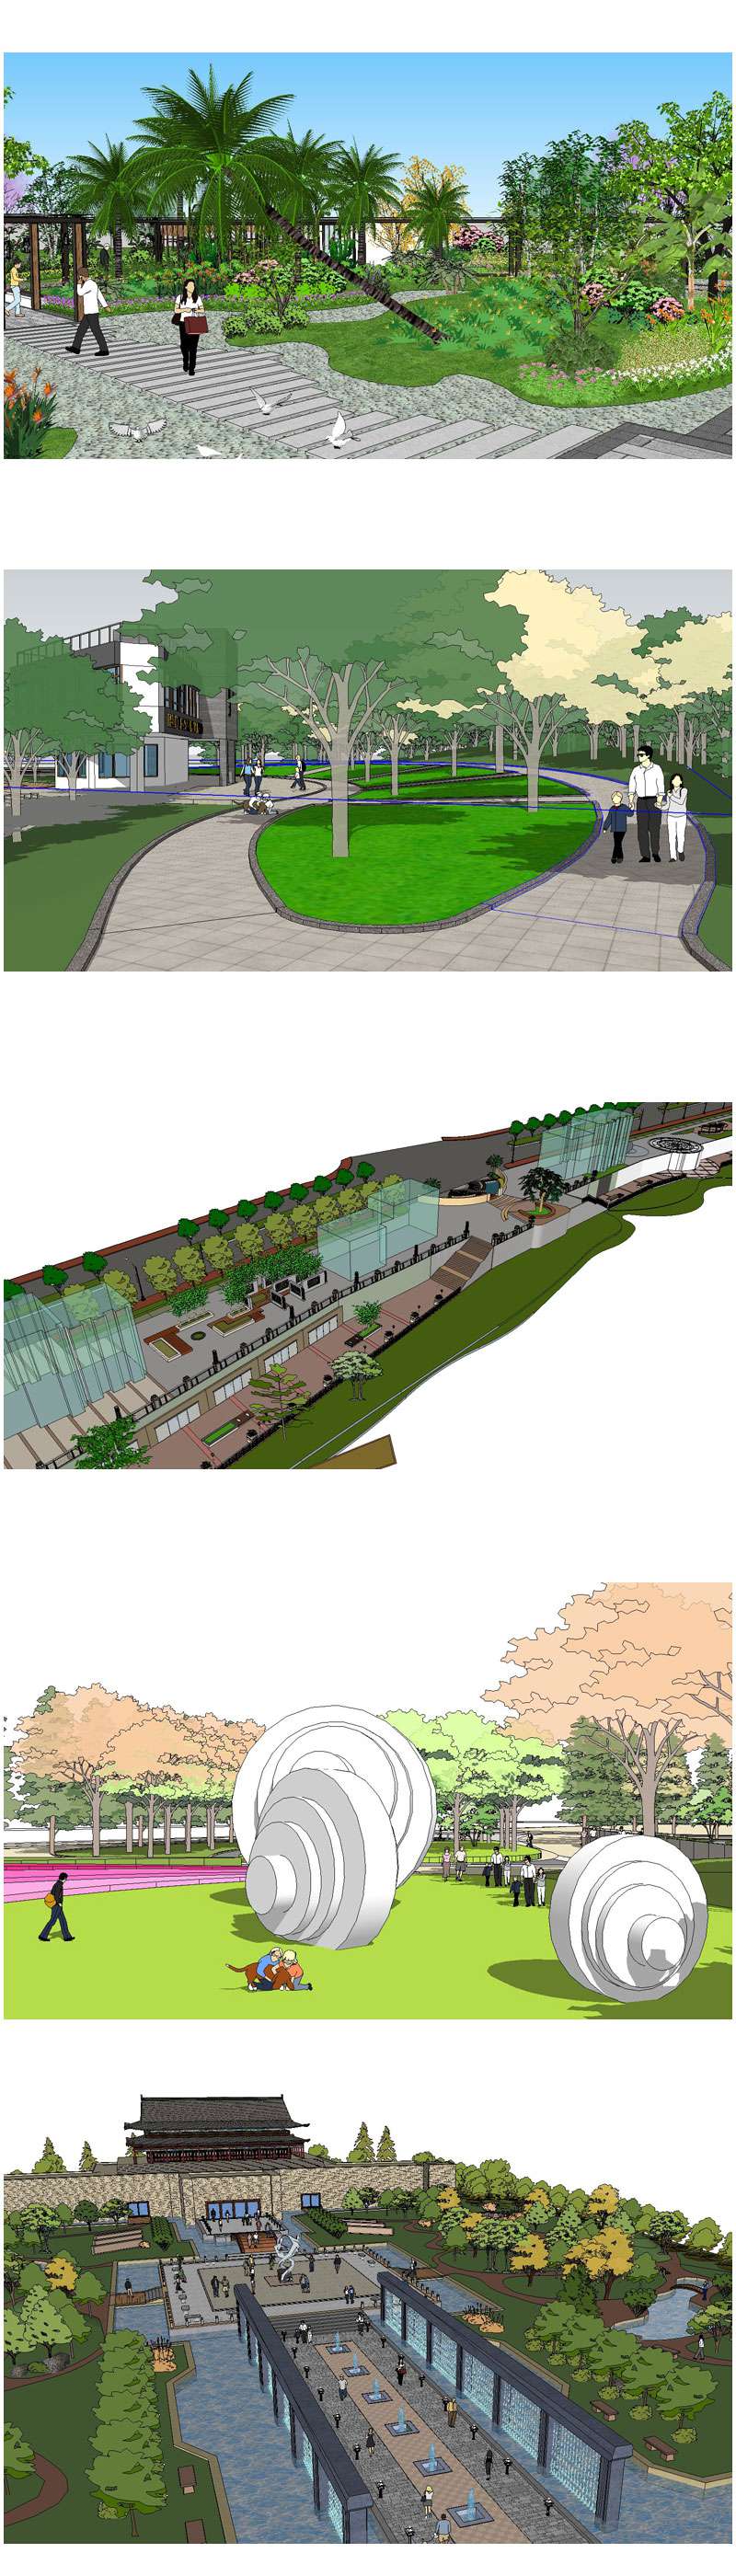 Sketchup 3D Models】20 Types of Park Landscape Sketchup 3D